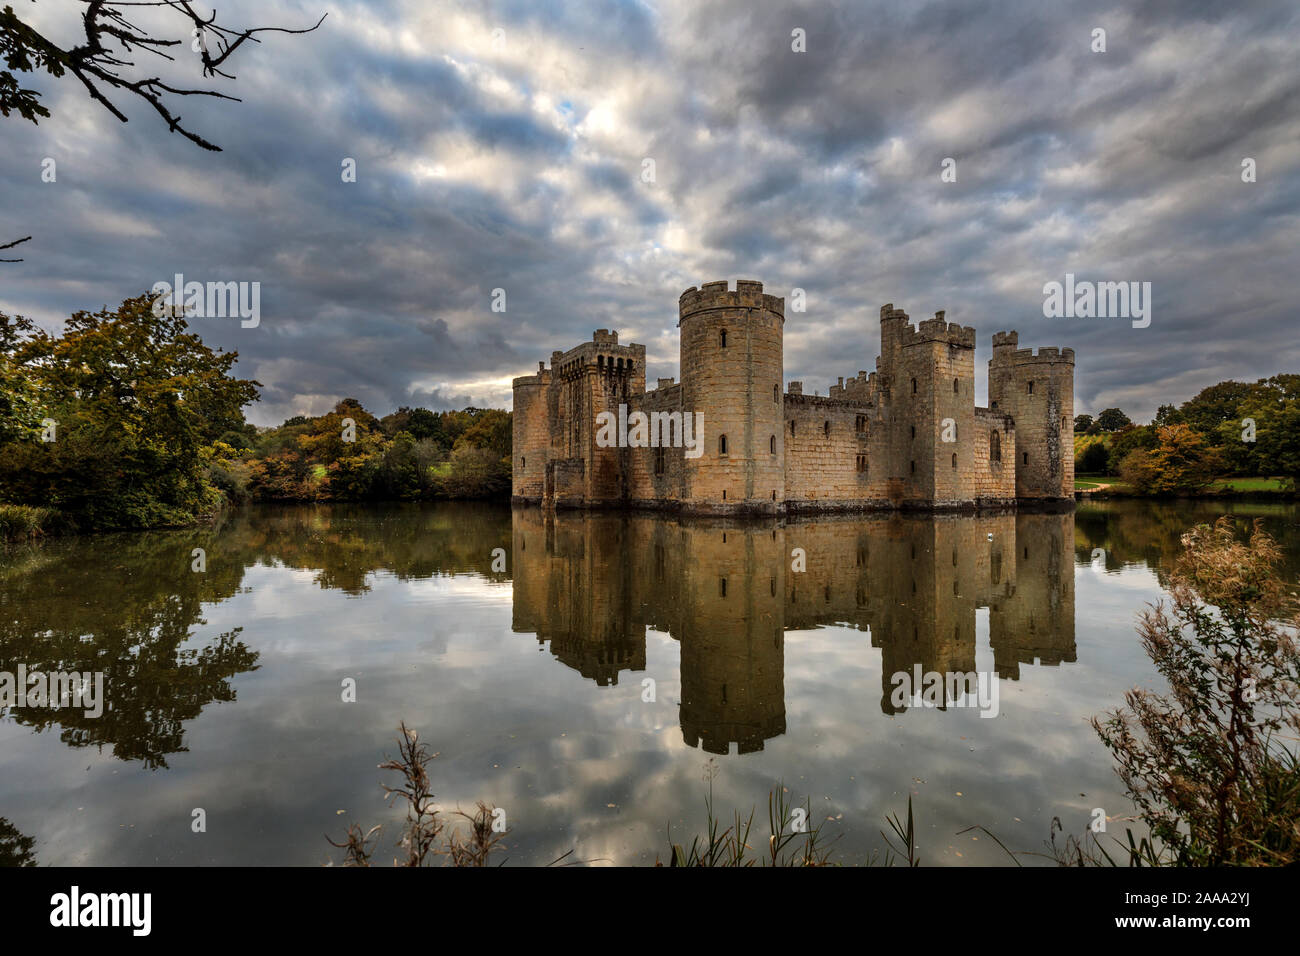 Château de Bodiam en automne. Un château fort du 14ème siècle dans l'East Sussex, Angleterre au crépuscule. Banque D'Images